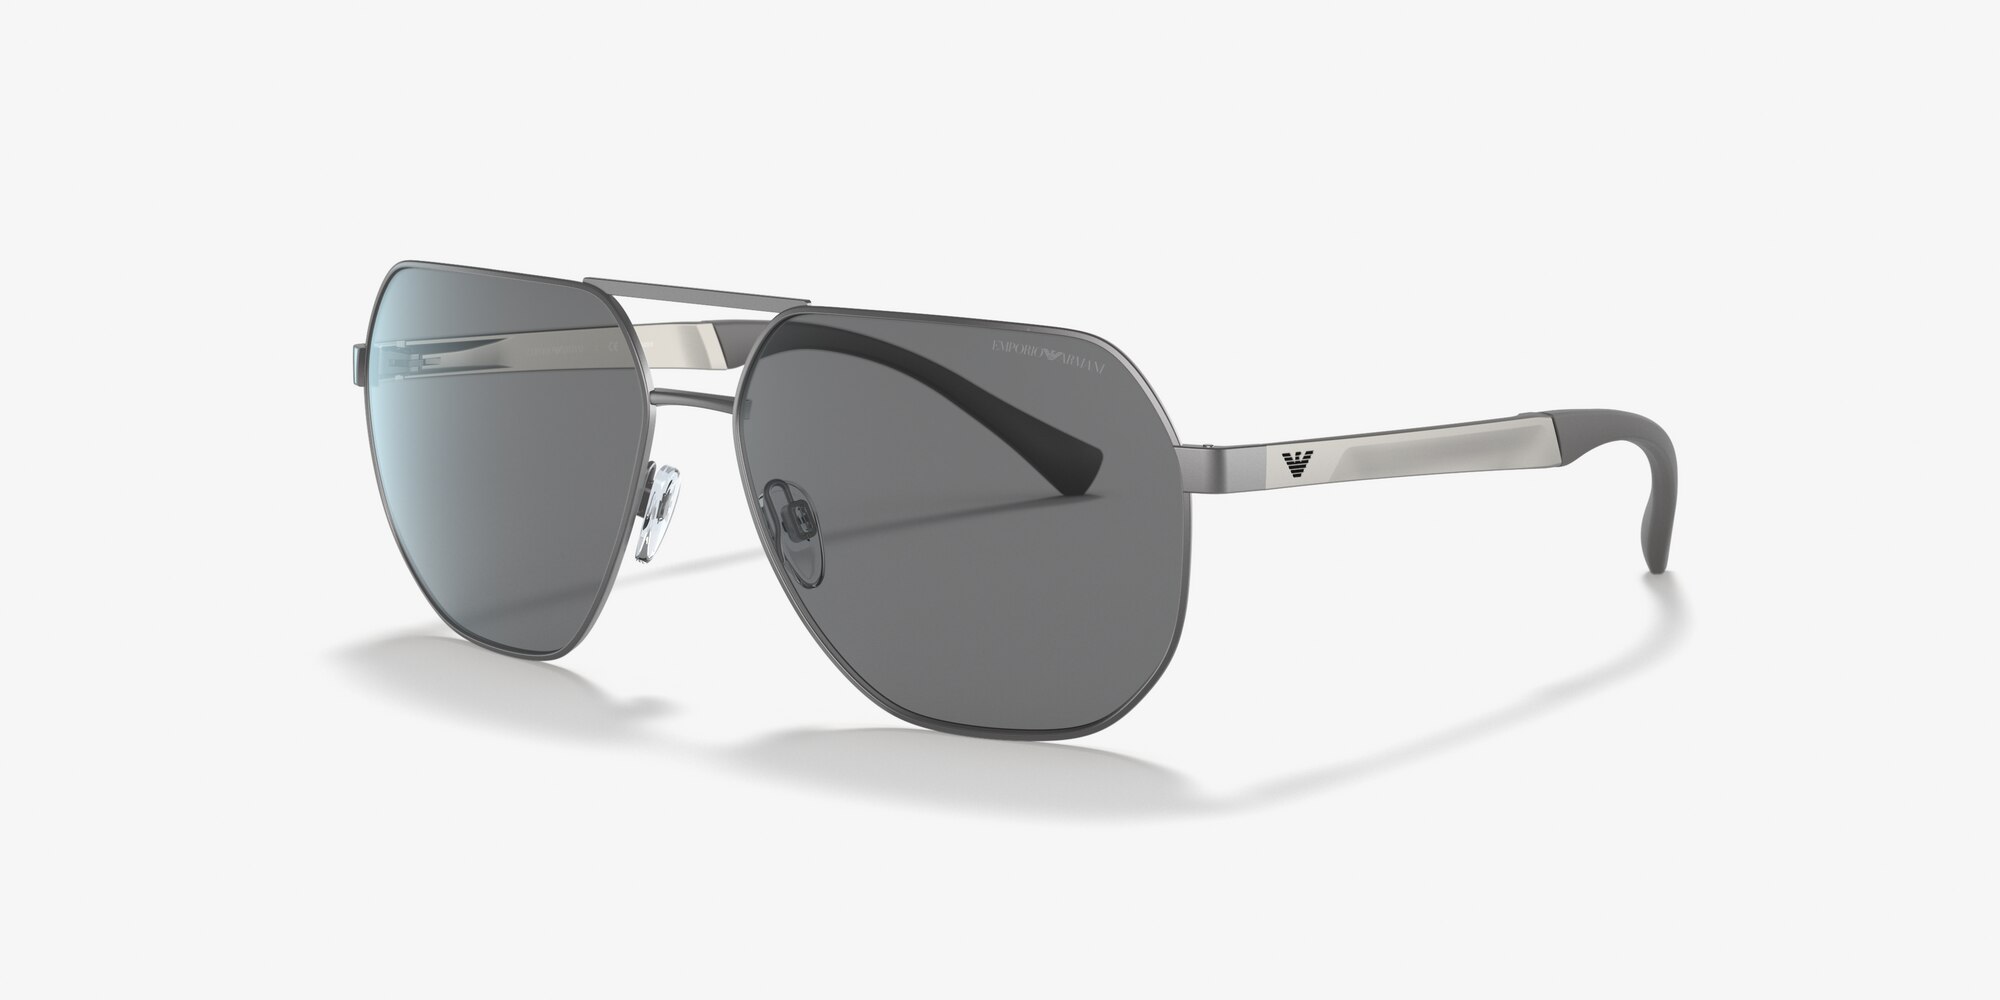 Armani Sunglasses - Luxury Emporio Armani Sunglasses Online